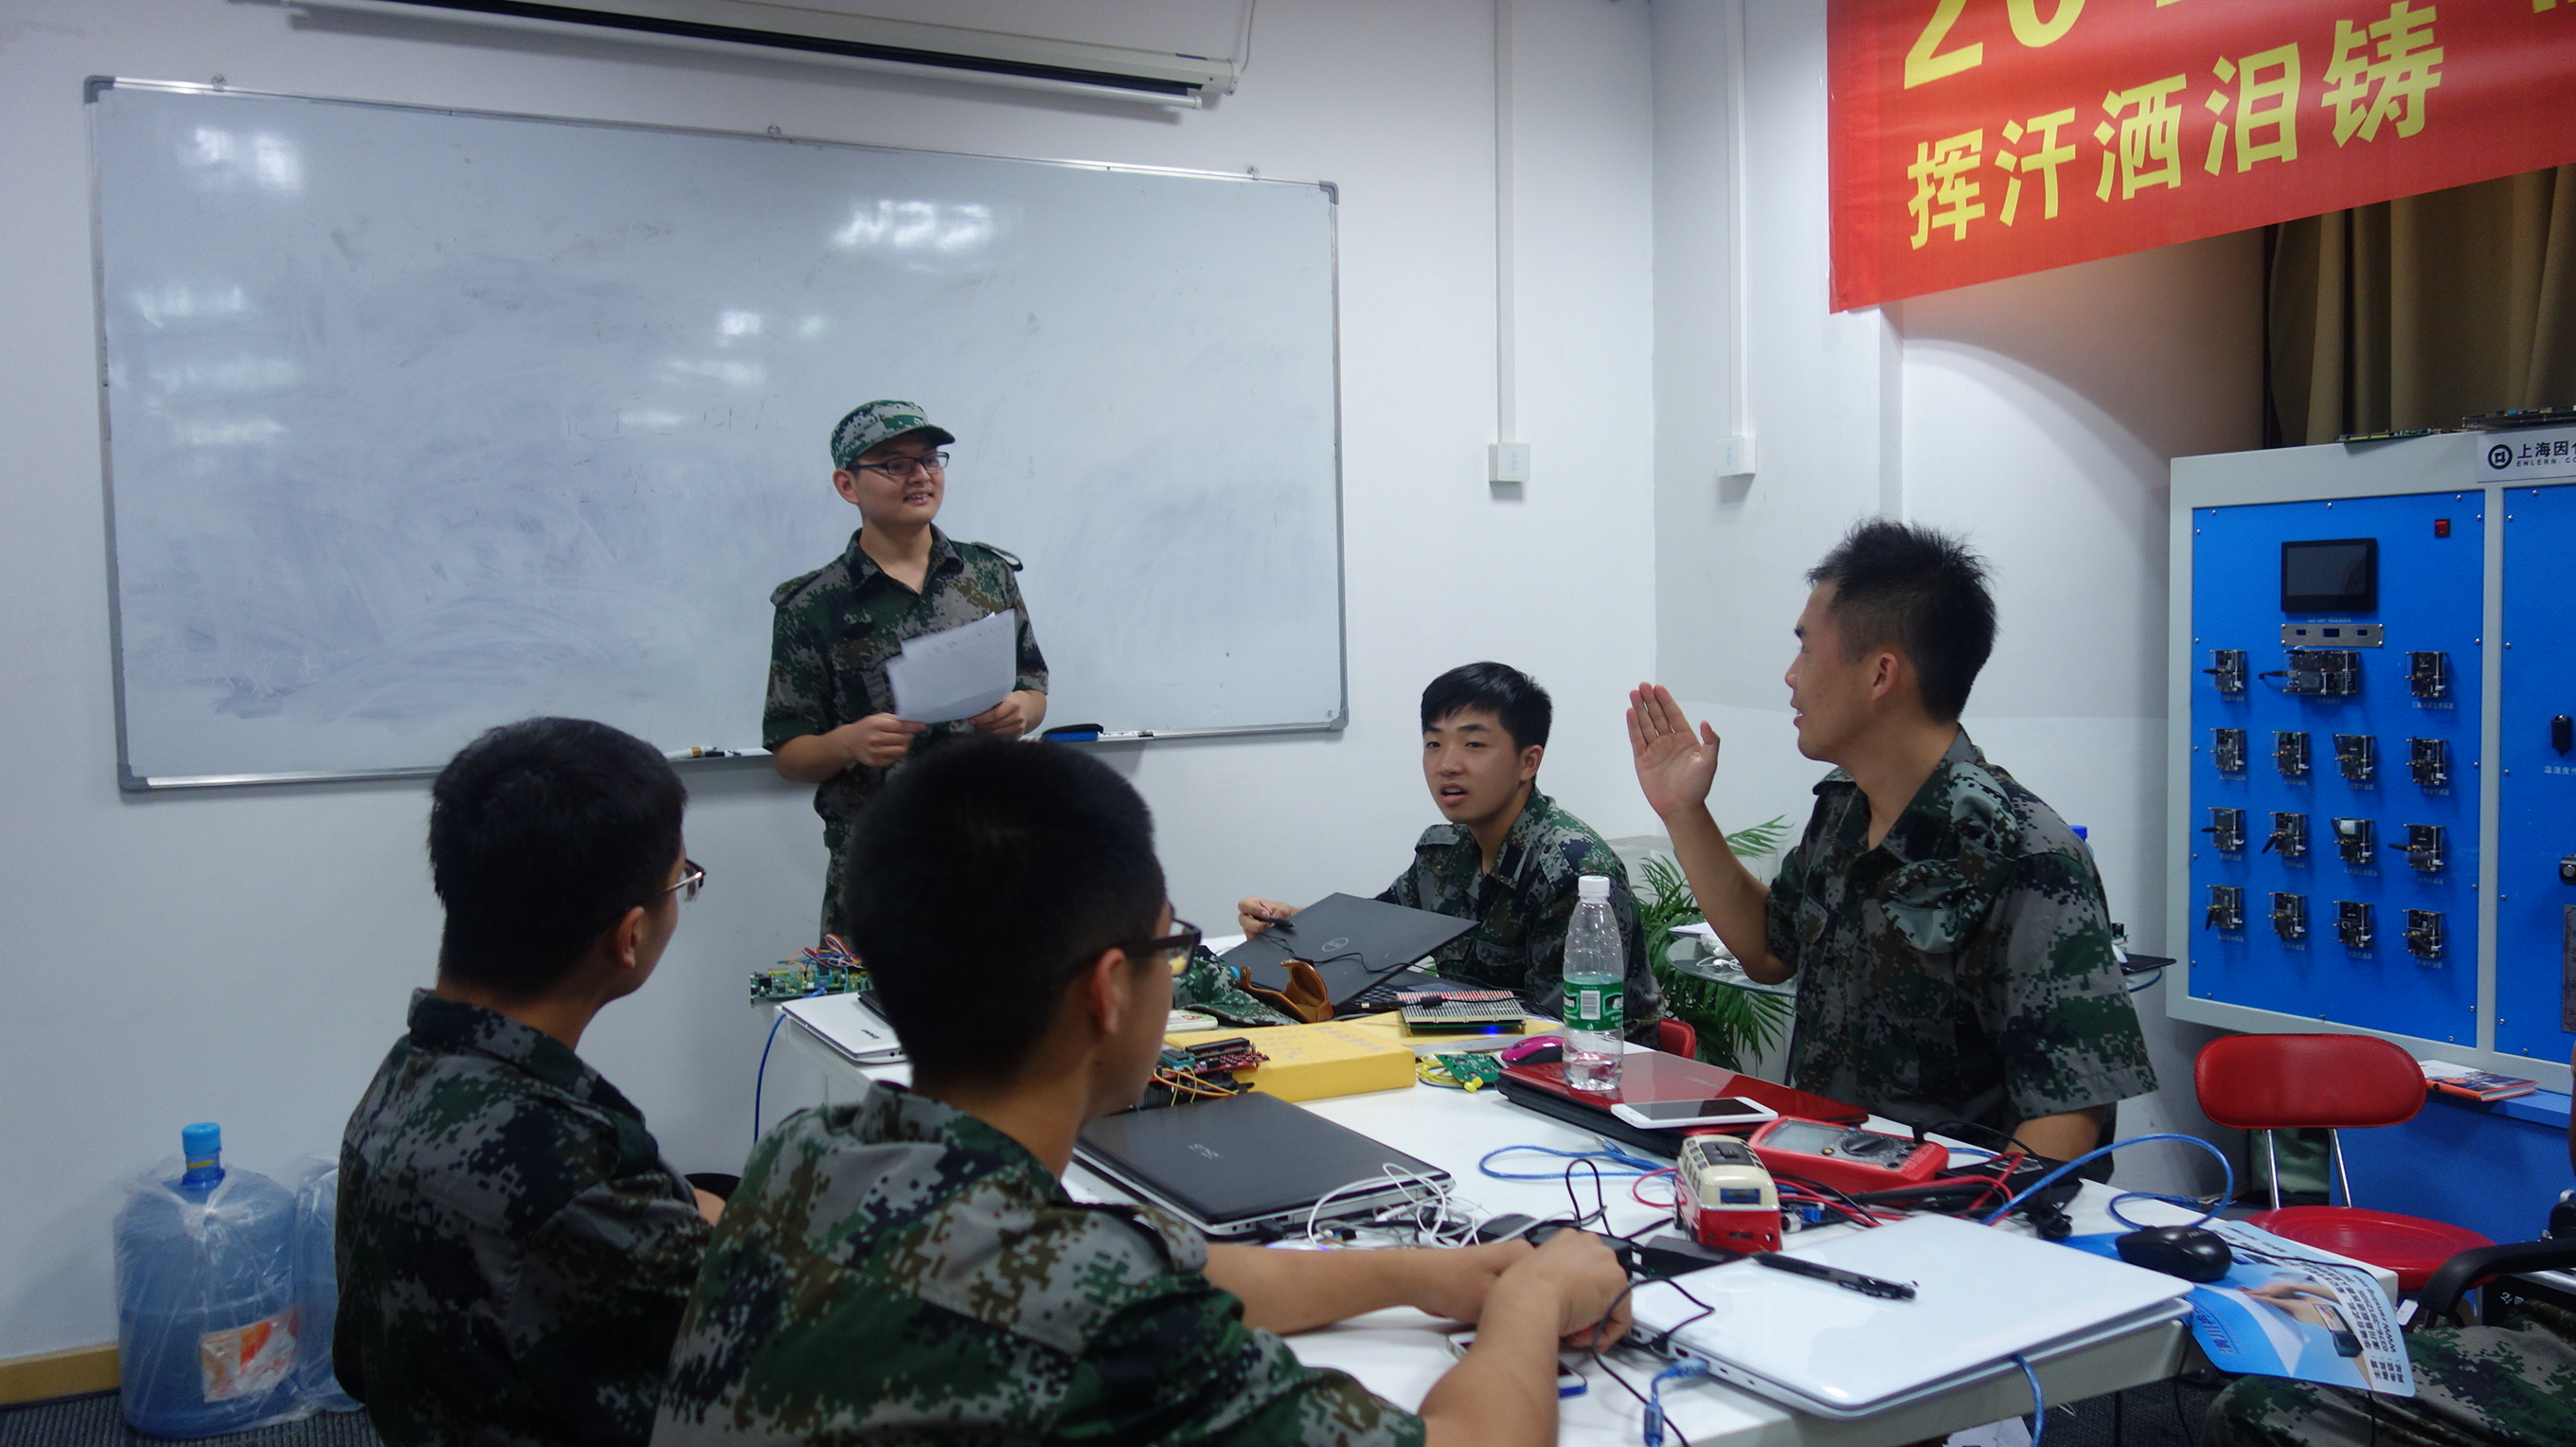 7月28日上海因仑“3+1”暑假“工程特种兵”新闻资讯